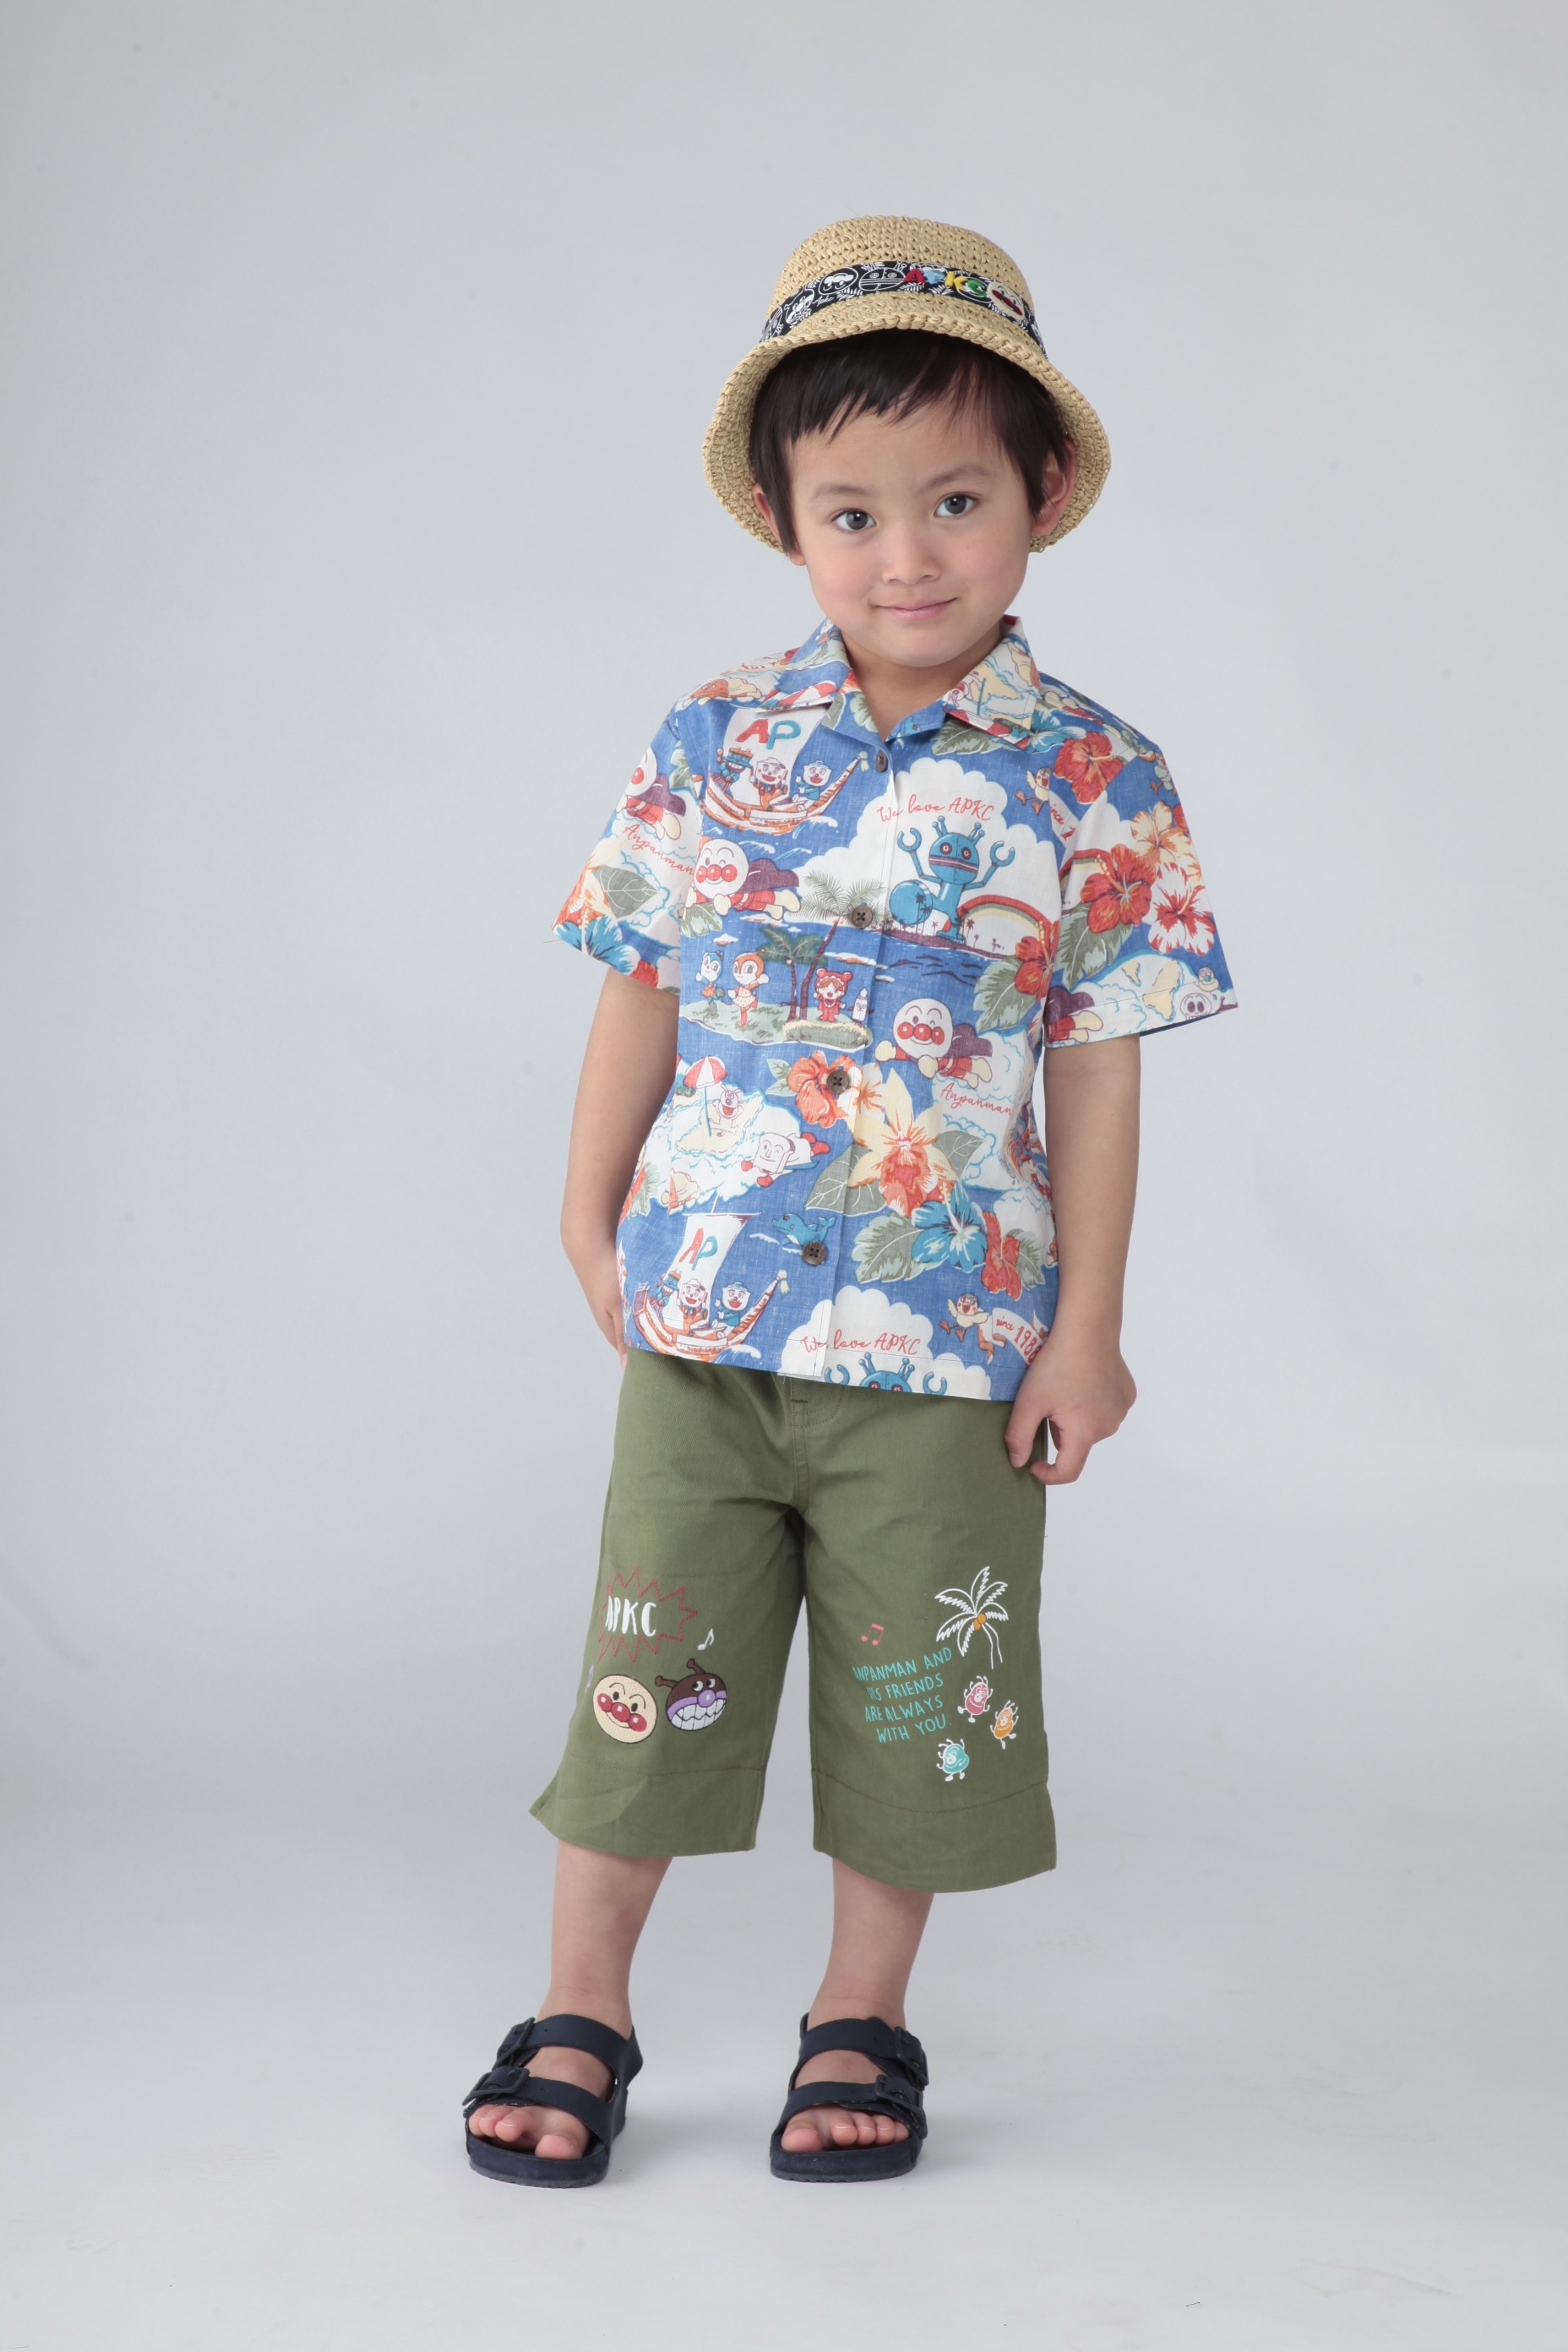 アンパンマンの子ども服ブランドが「Rakuten Fashion」に登場 